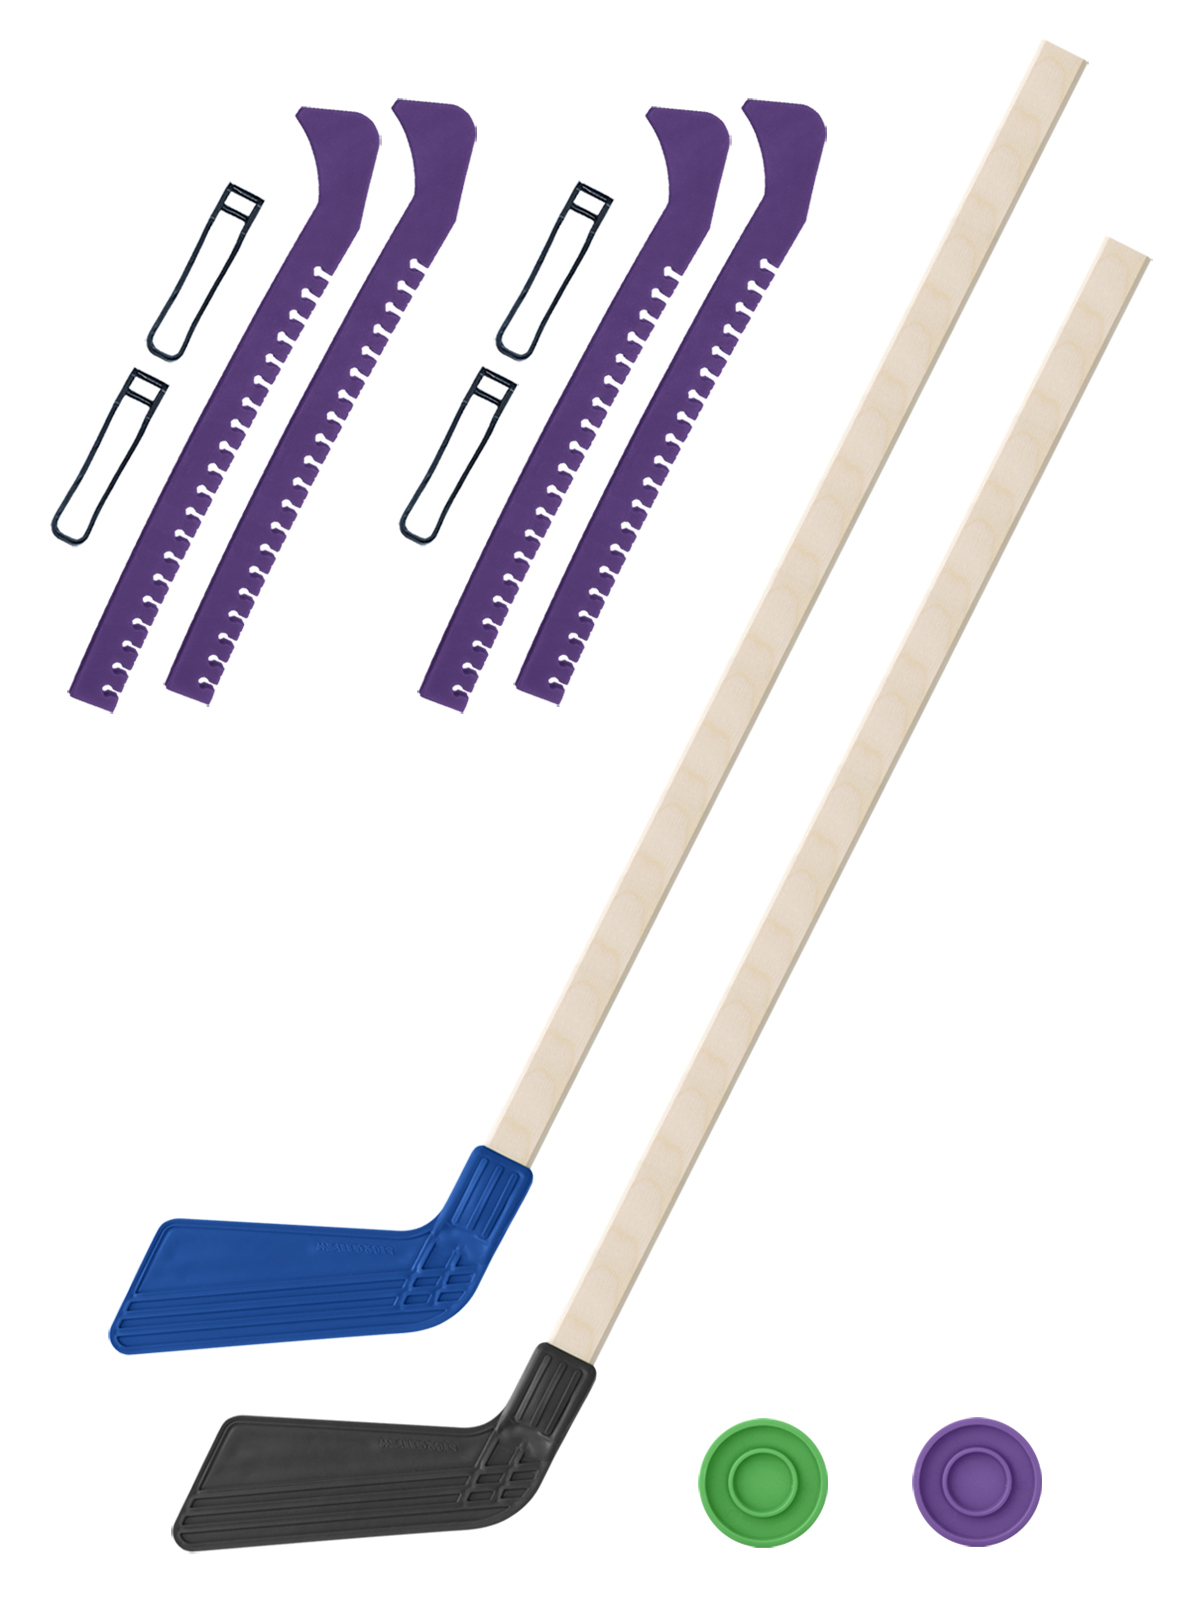 фото 2 клюшки хоккейных синяя и чёрная 80 см.+2 шайбы + чехлы для коньков фиолетовые - 2 шт. задира-плюс